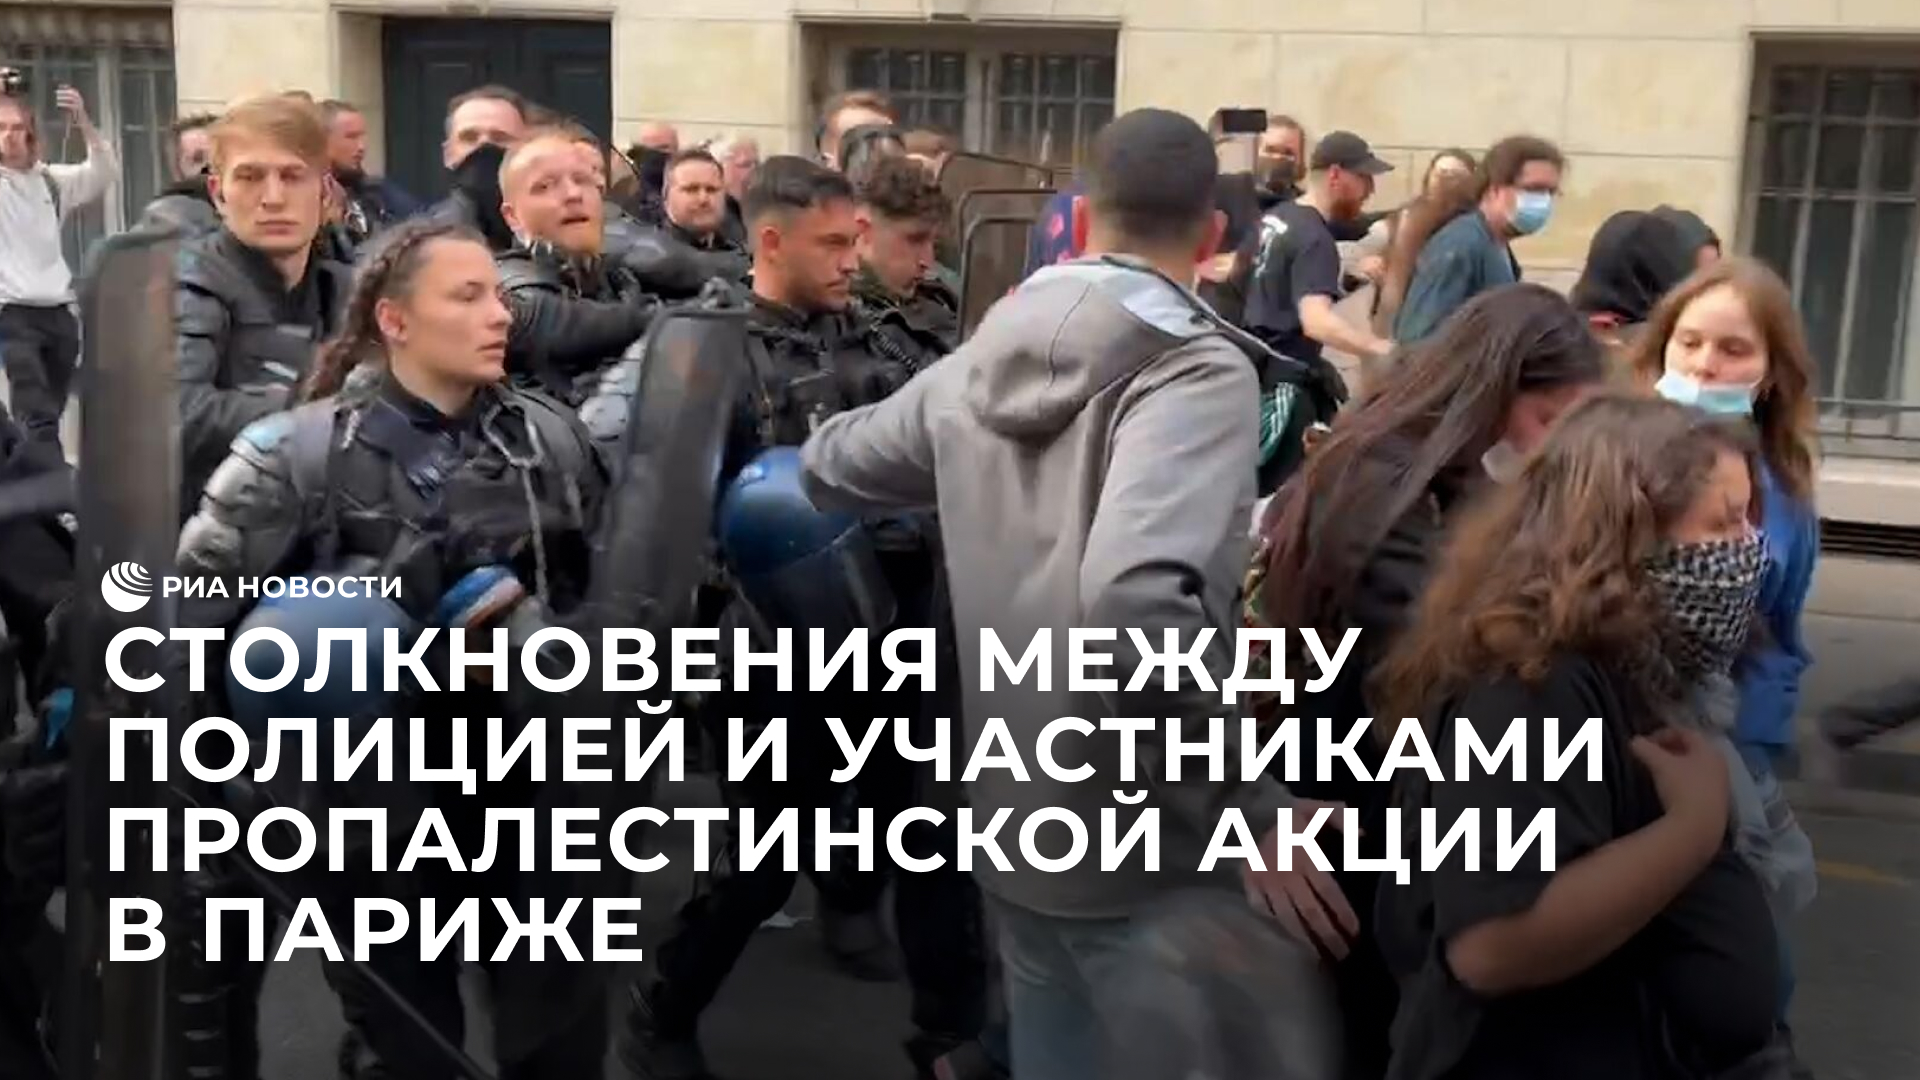 Столкновения между полицией и участниками пропалестинской акции в Париже